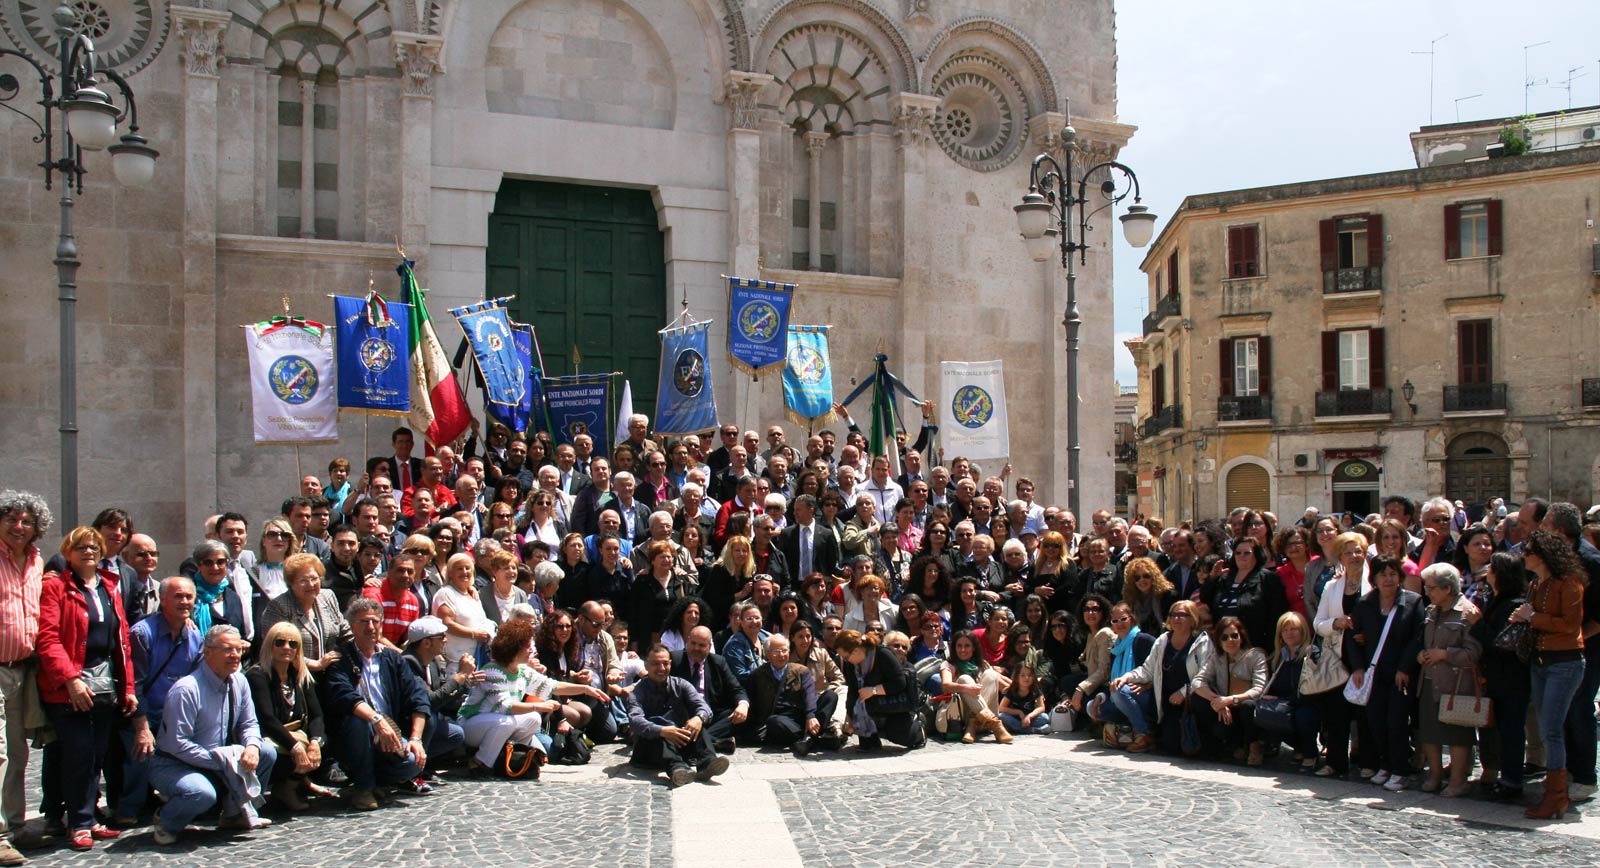 Festa-Nazionale-Ens-2013-Foggia